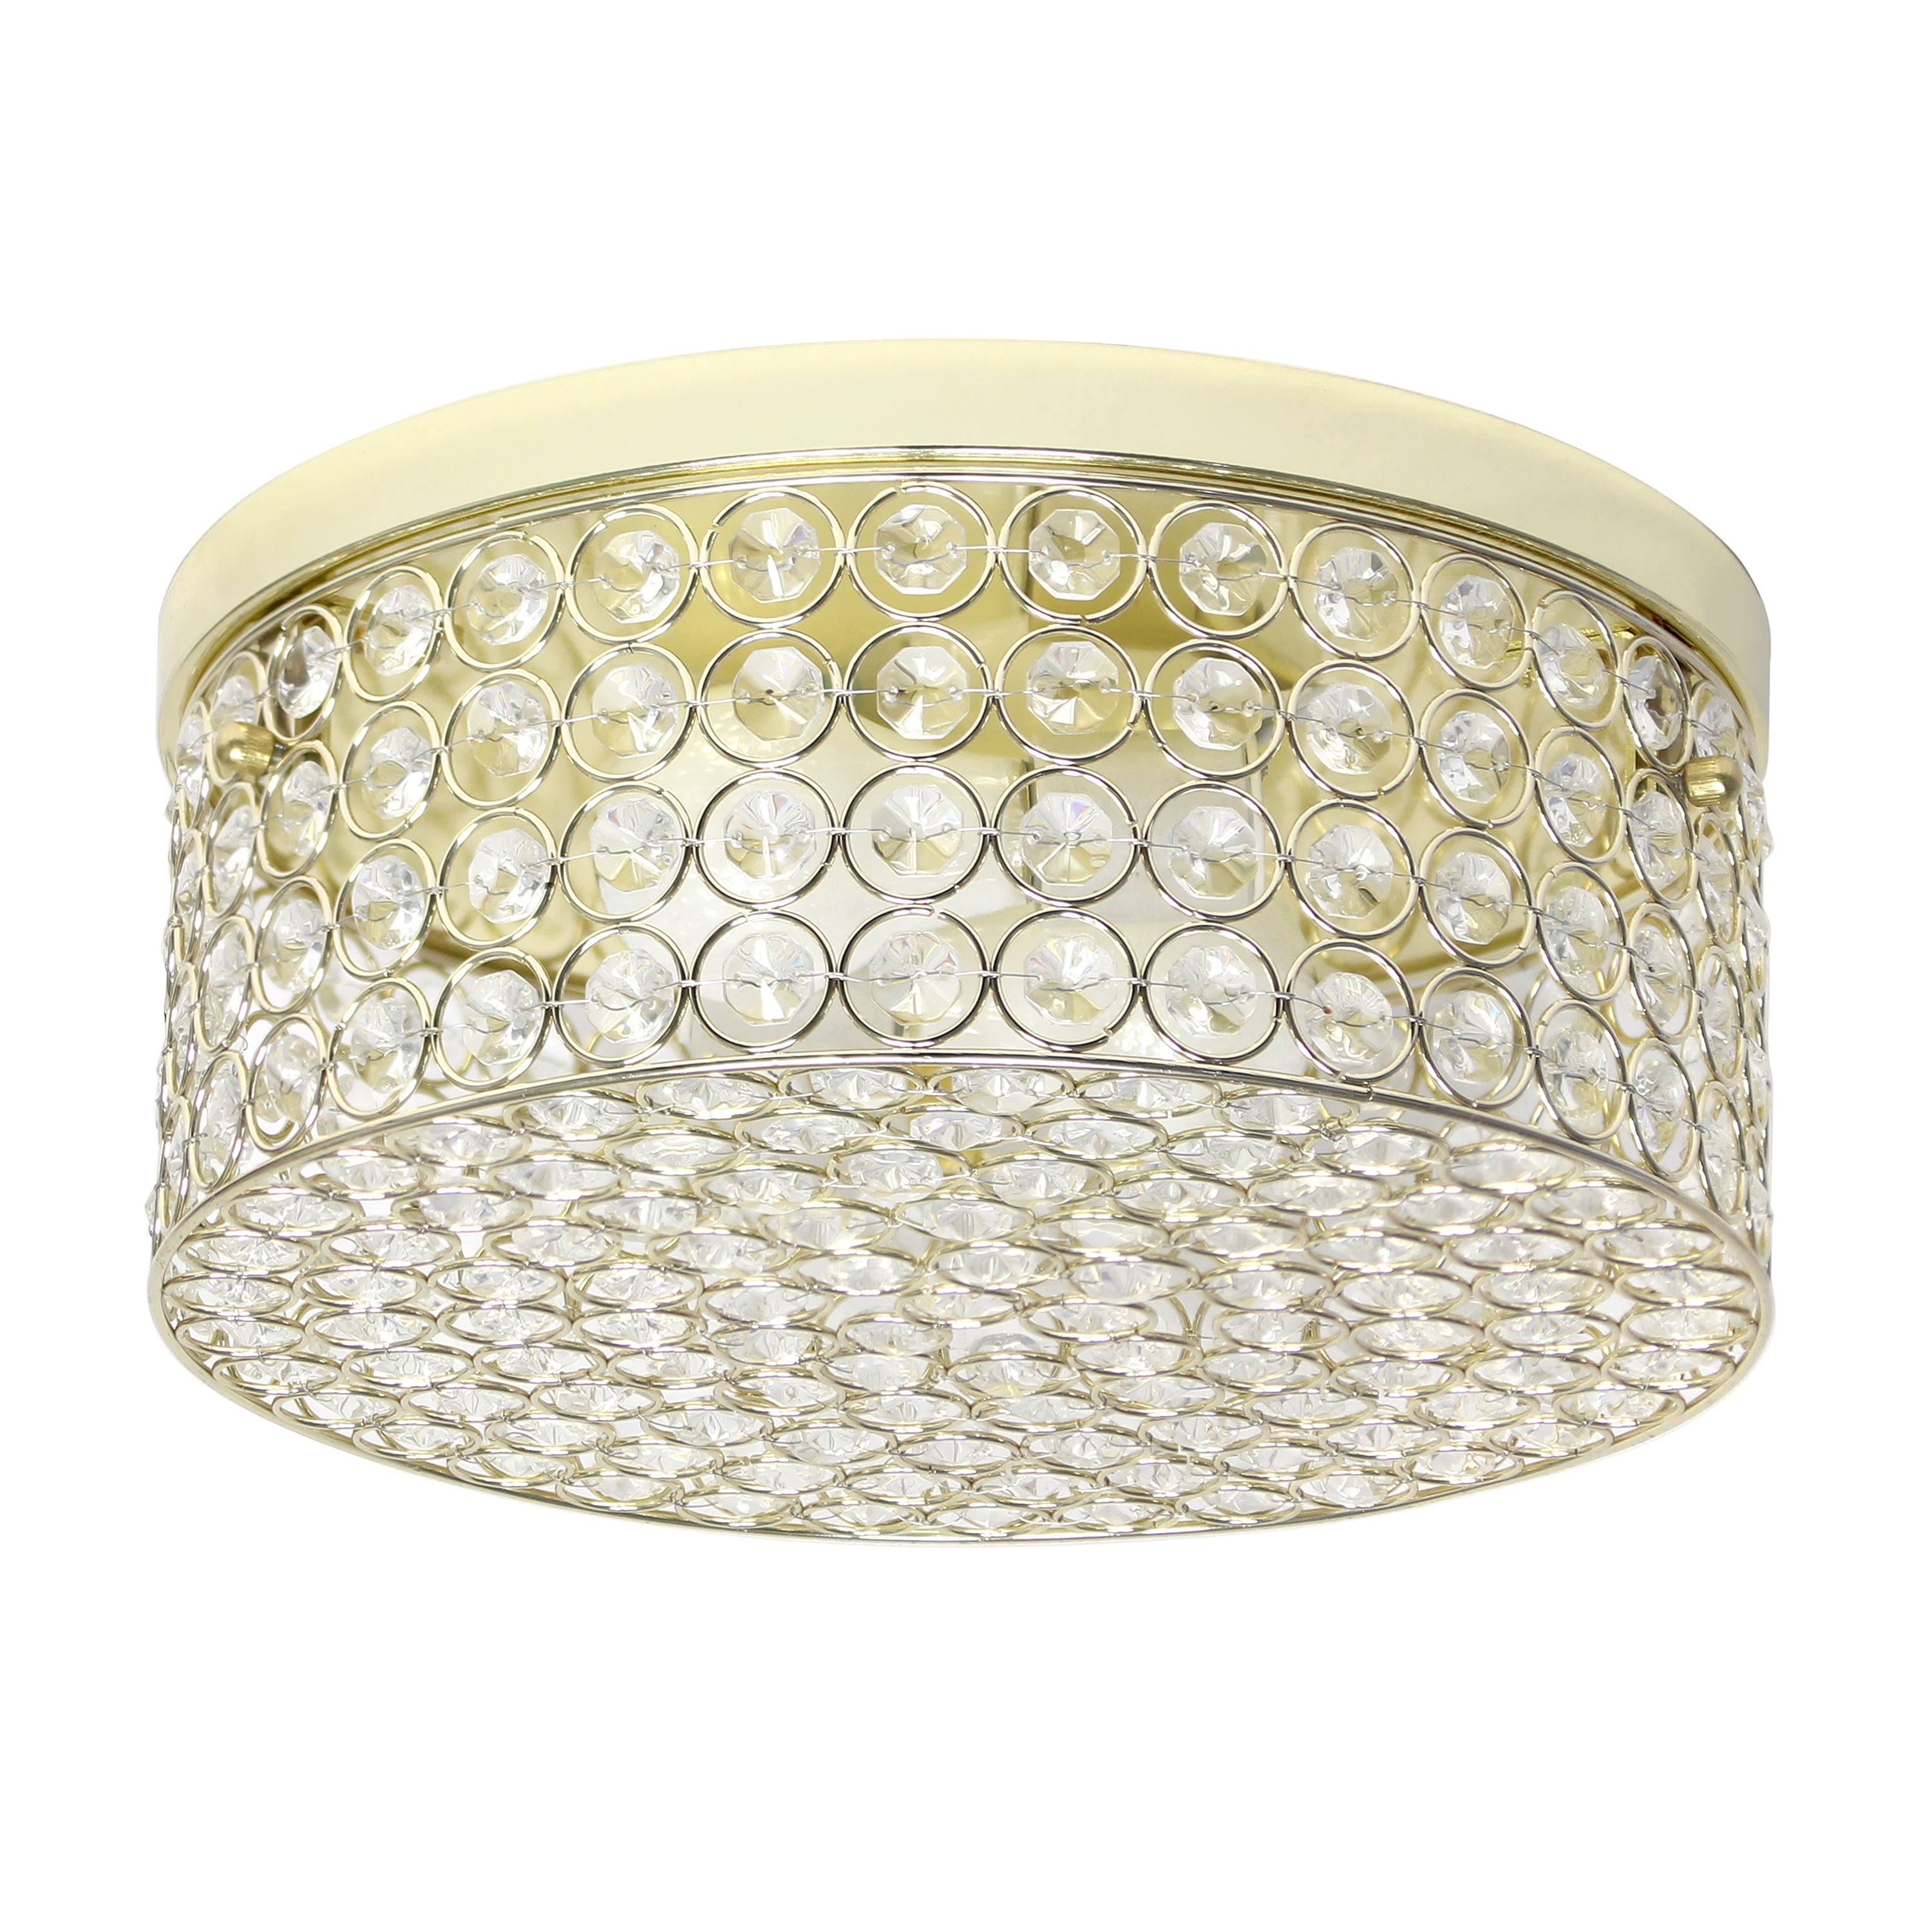 Elegant Designs Fm1003-gld 12 In. Elipse Crystal 2 Light Round Ceiling Flush Mount, Gold